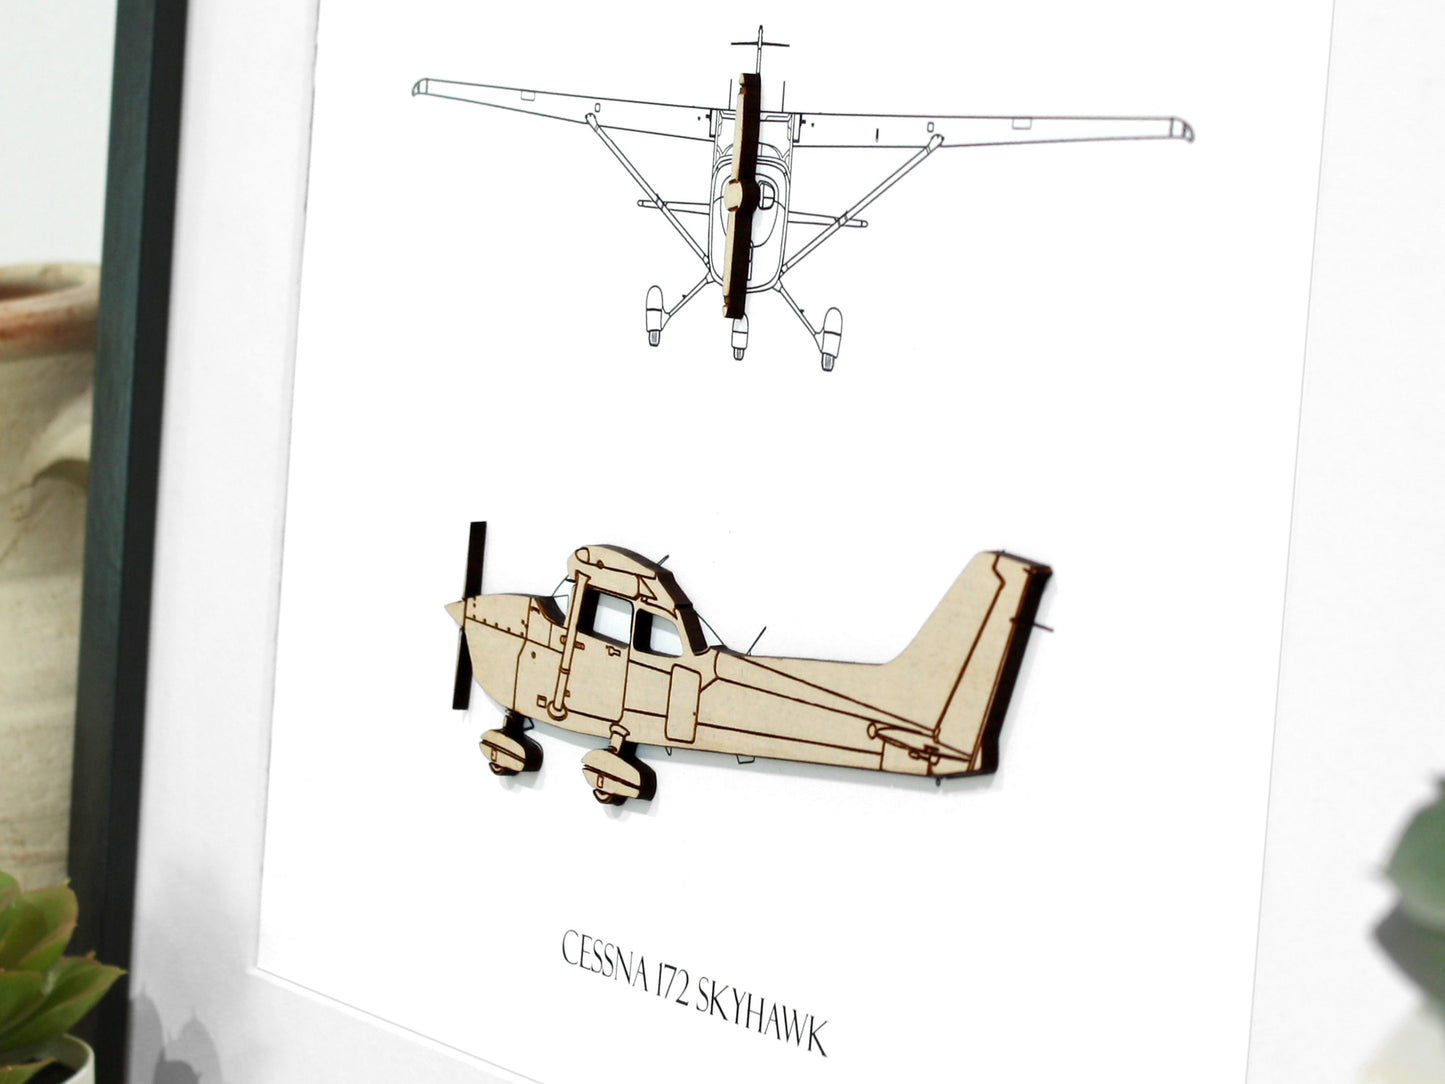 Cessna 172 Skyhawk blueprint art